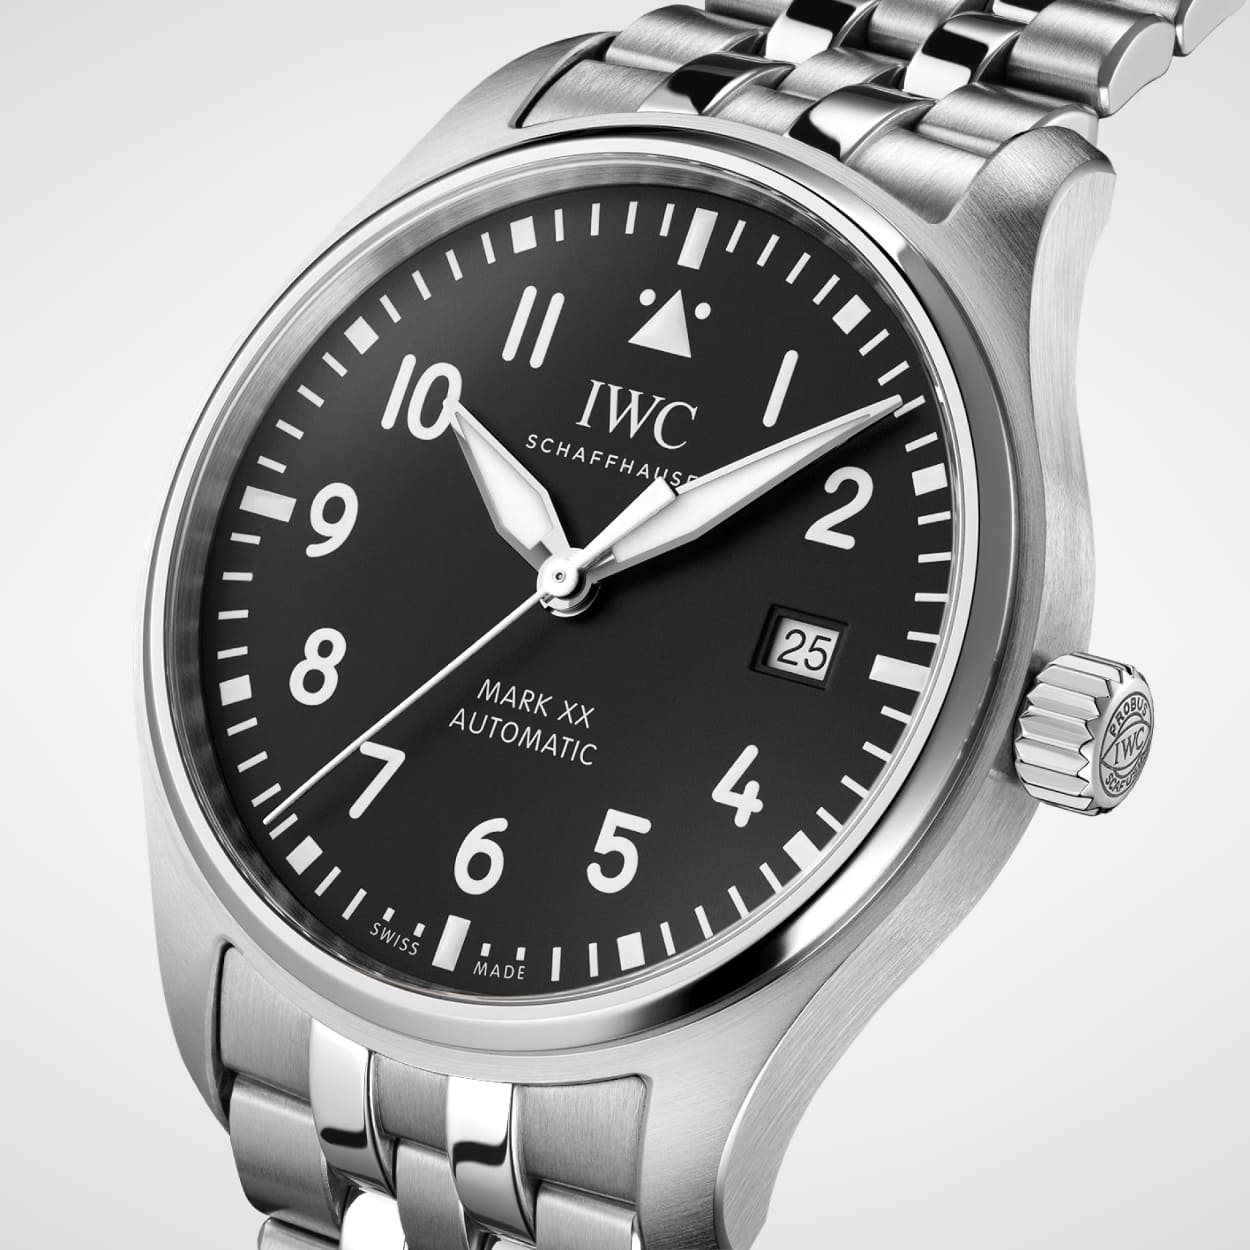 Leicht seitlicher Blick auf das Edelstahlgehaeuse der IWC Pilots Watch Mark XX mit schwarzem Zifferblatt